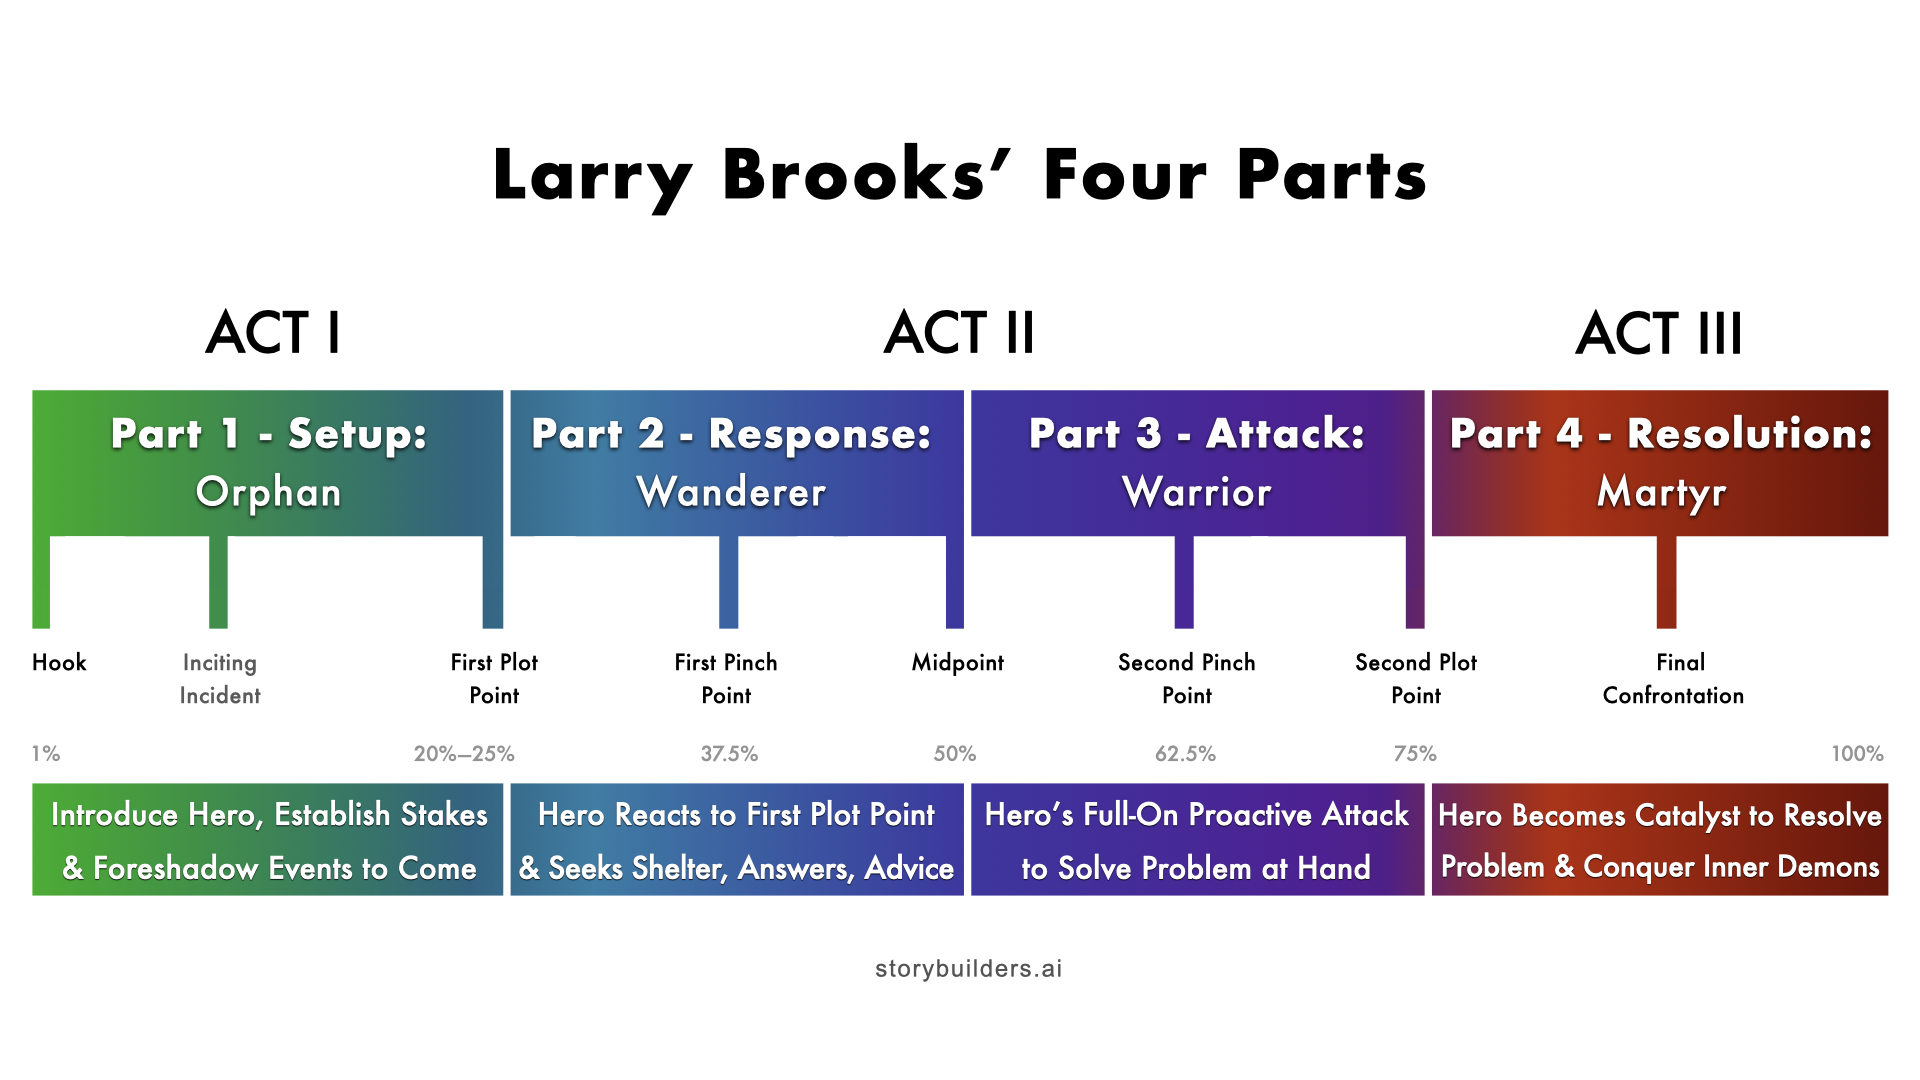 Larry Brooks Four Parts-Plot Diagram